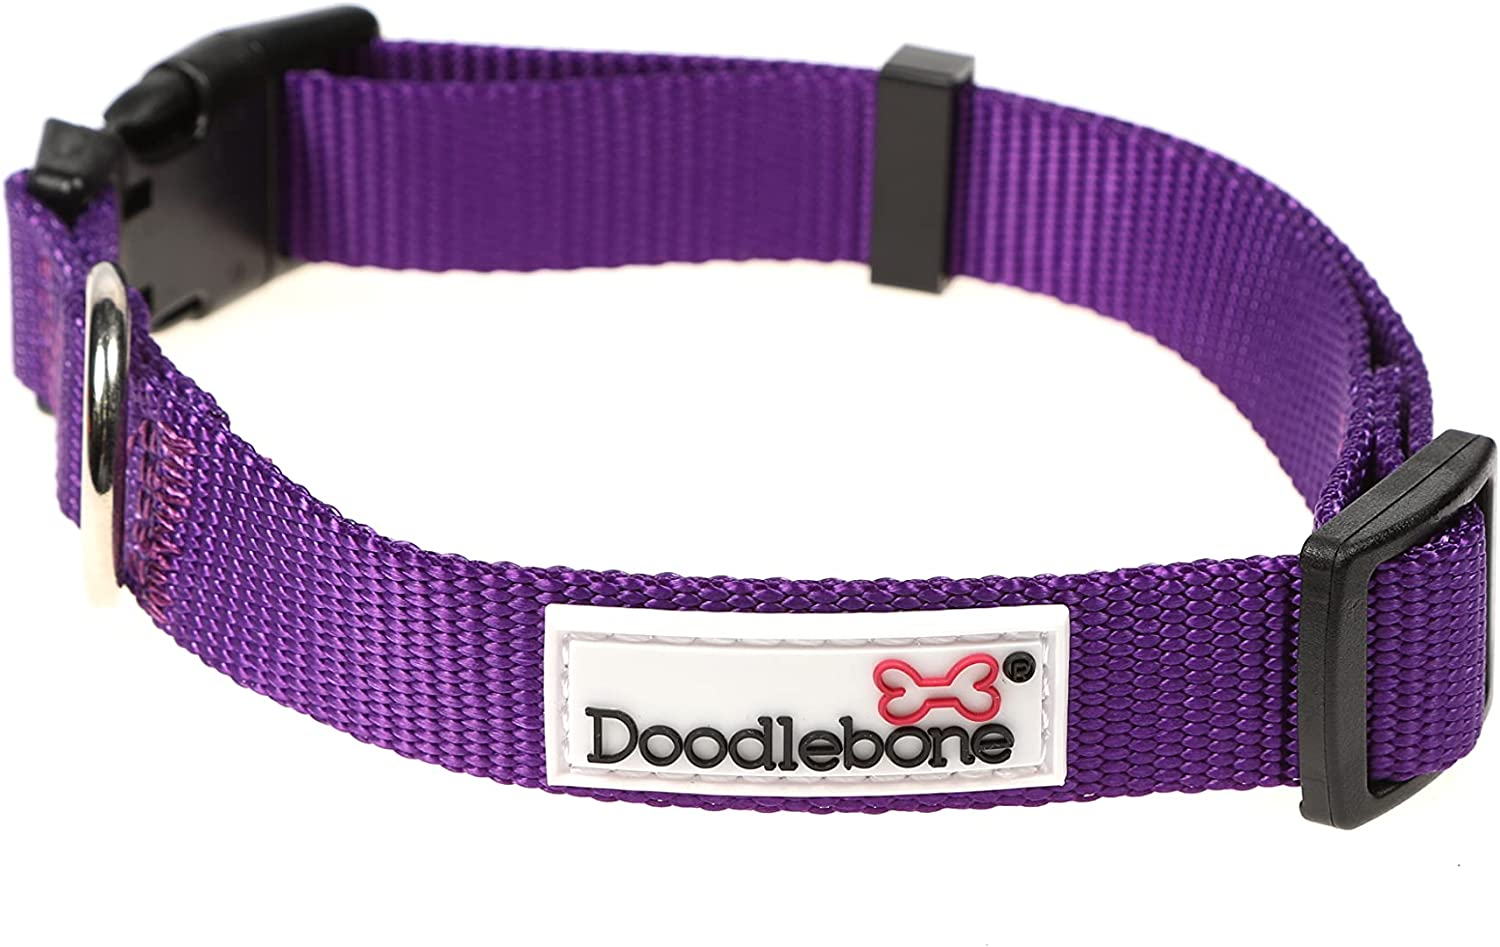 Doodlebone, Originals Collar, Violet Size 3-6